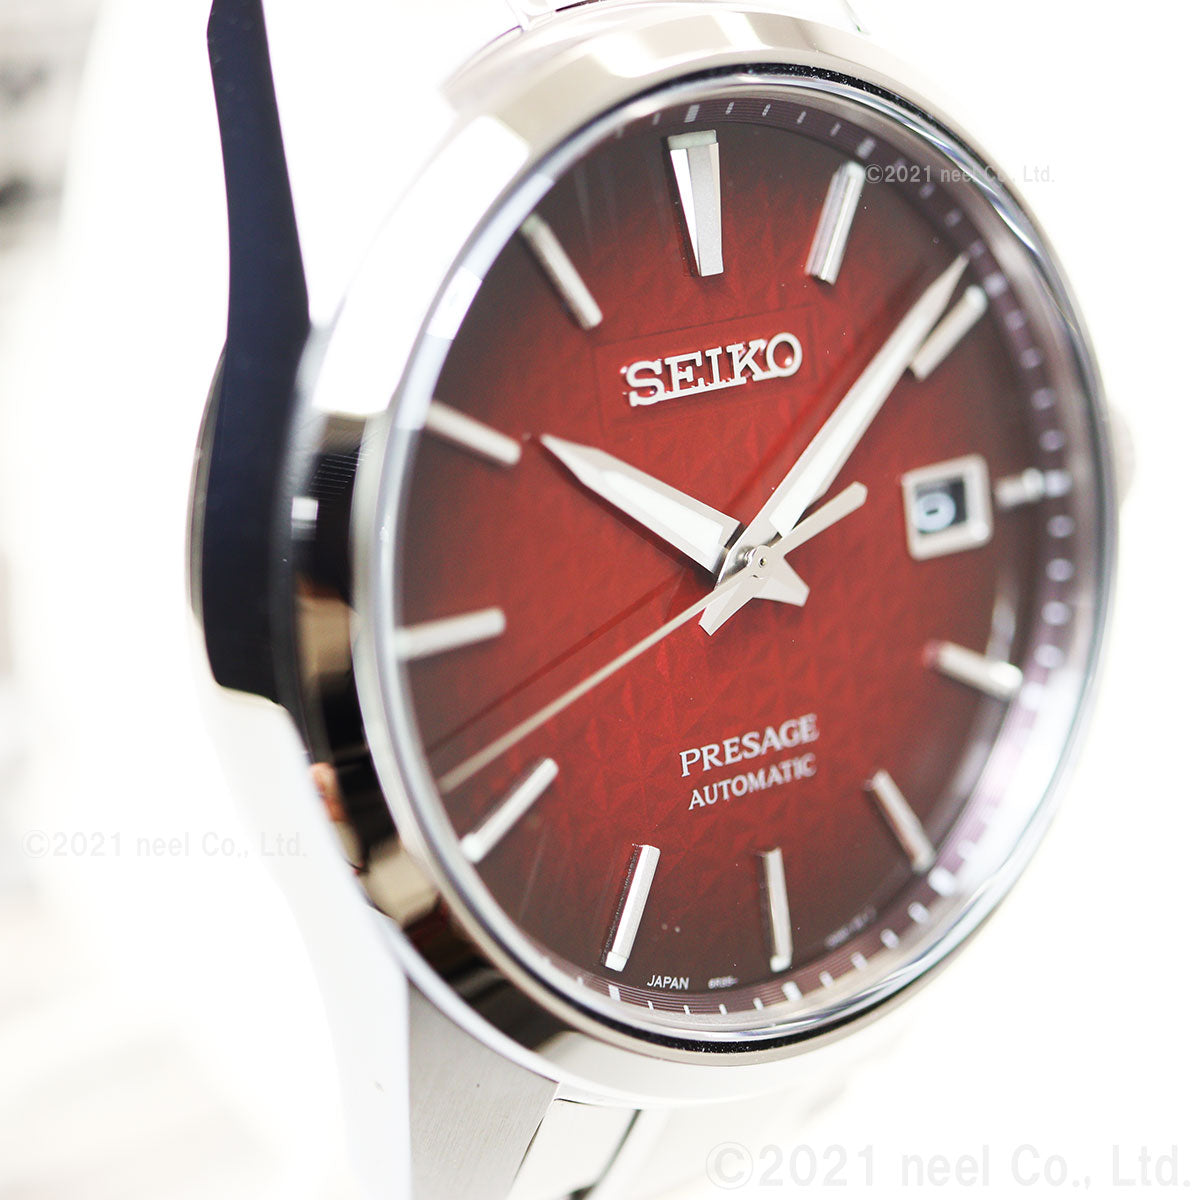 セイコー SEIKO 腕時計 メンズ SARX089 セイコー メカニカル プレザージュ プレステージライン シャープ エッジド シリーズ Prestige line Sharp Edged Series 自動巻き（6R35/手巻き付） レッドxシルバー アナログ表示